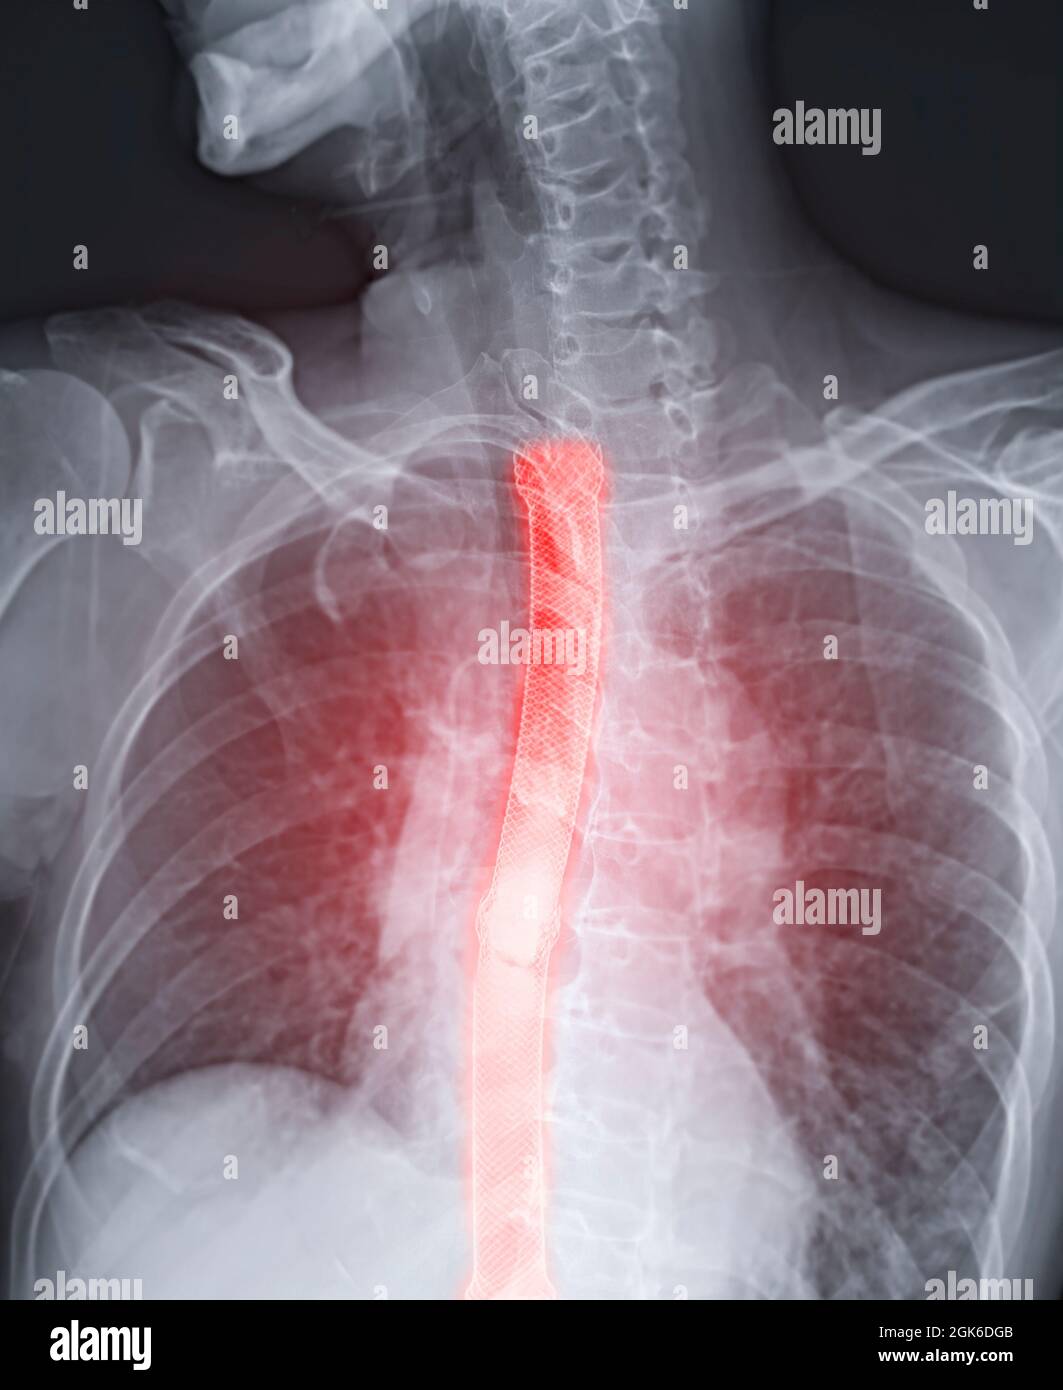 Immagine di esofagramma o di deglutizione di bario che mostra il posizionamento dello stent esofageo per il cancro esofageo del paziente. Foto Stock